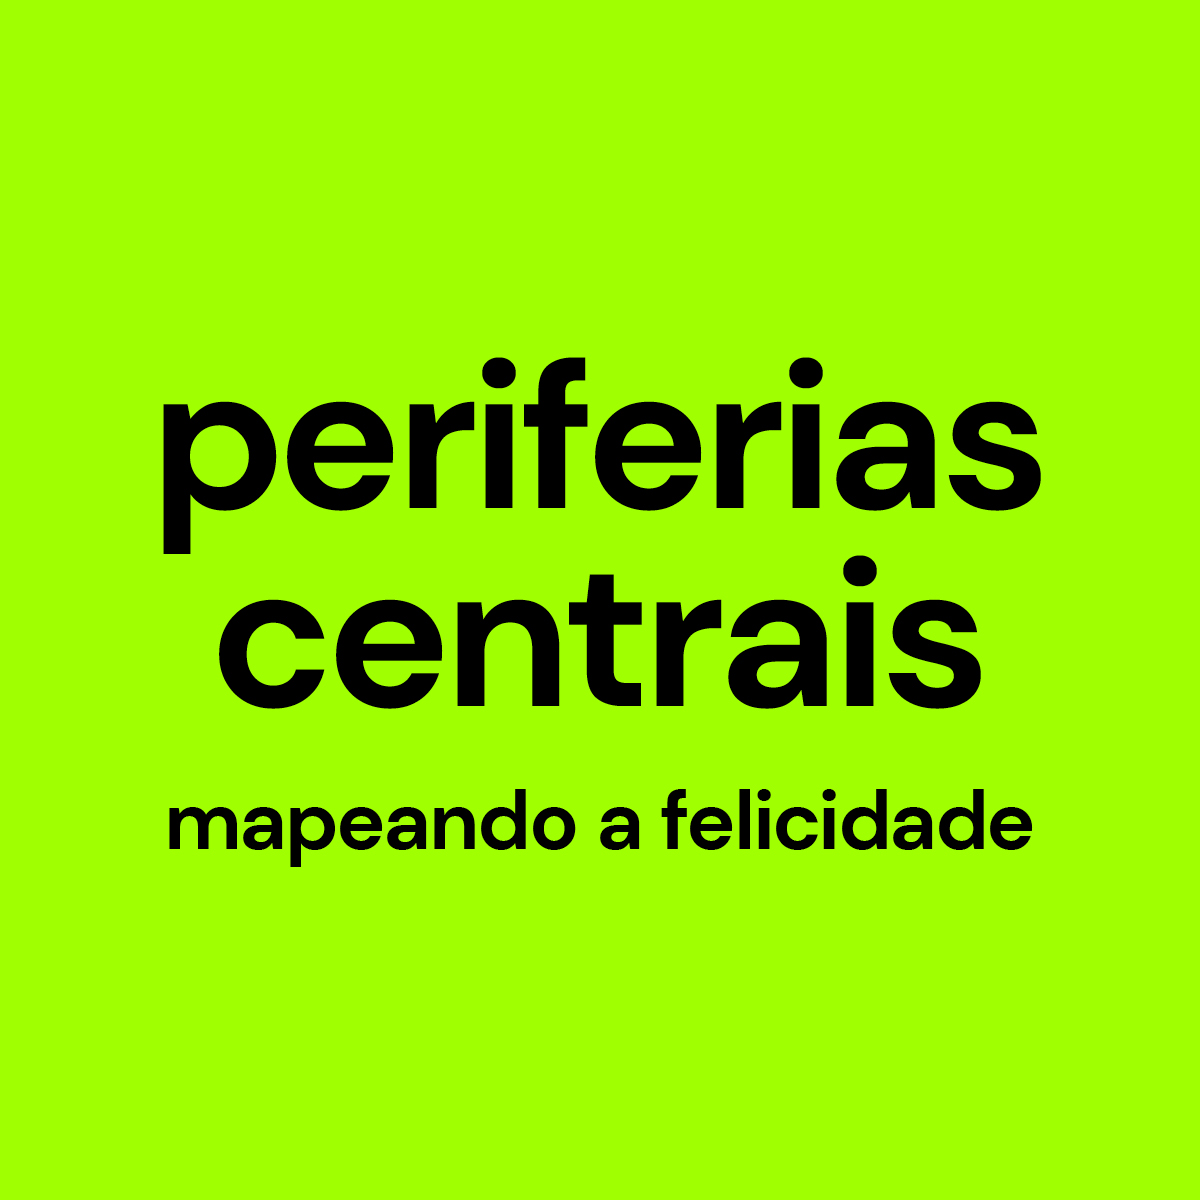 Imagem e link para o website Periferias Centrais